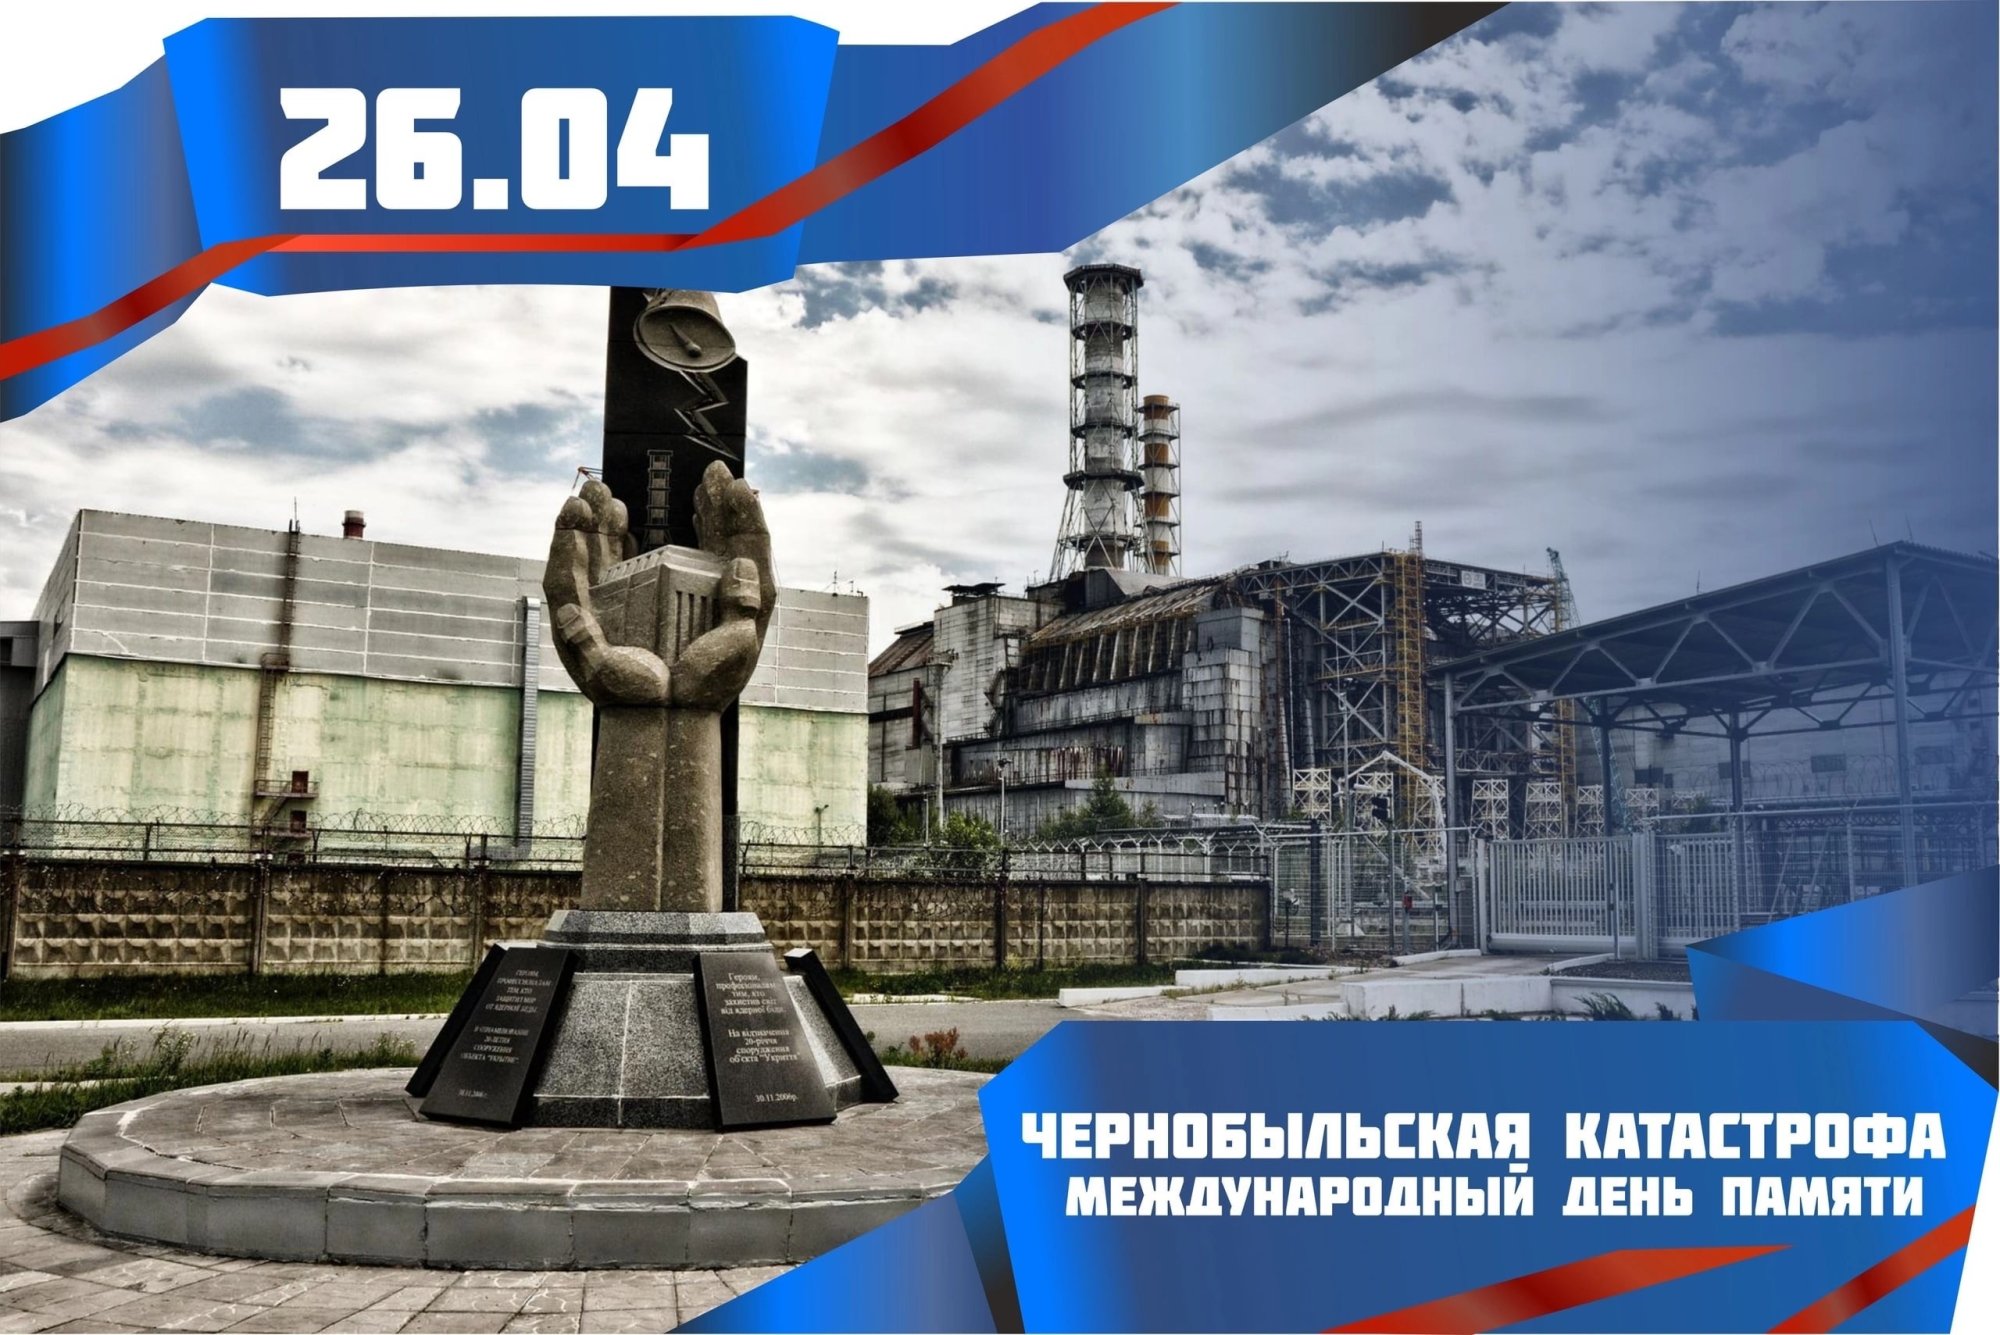 26 апреля день чернобыля. День памяти погибших в радиационных авариях и катастрофах. 26 Апреля день памяти погибших в радиационных авариях и катастрофах. Ликвидация аварии на Чернобыльской АЭС. Мероприятия к Чернобыльской АЭС.